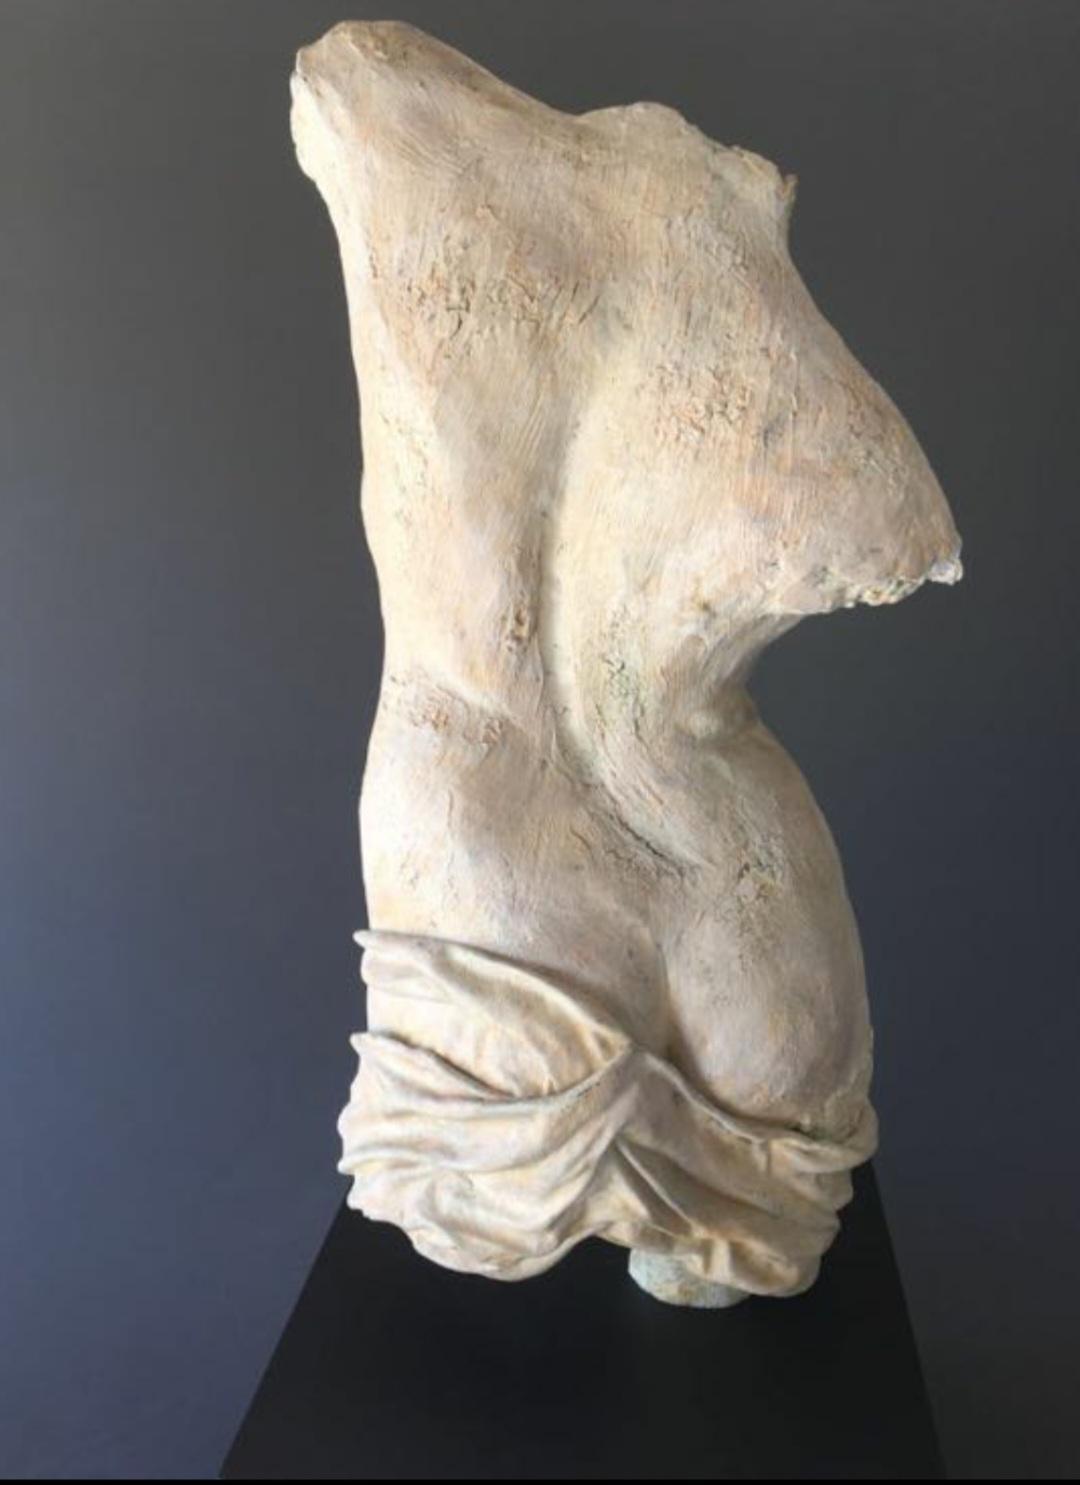 Lacere - Sculpture by Antonio Da Silva